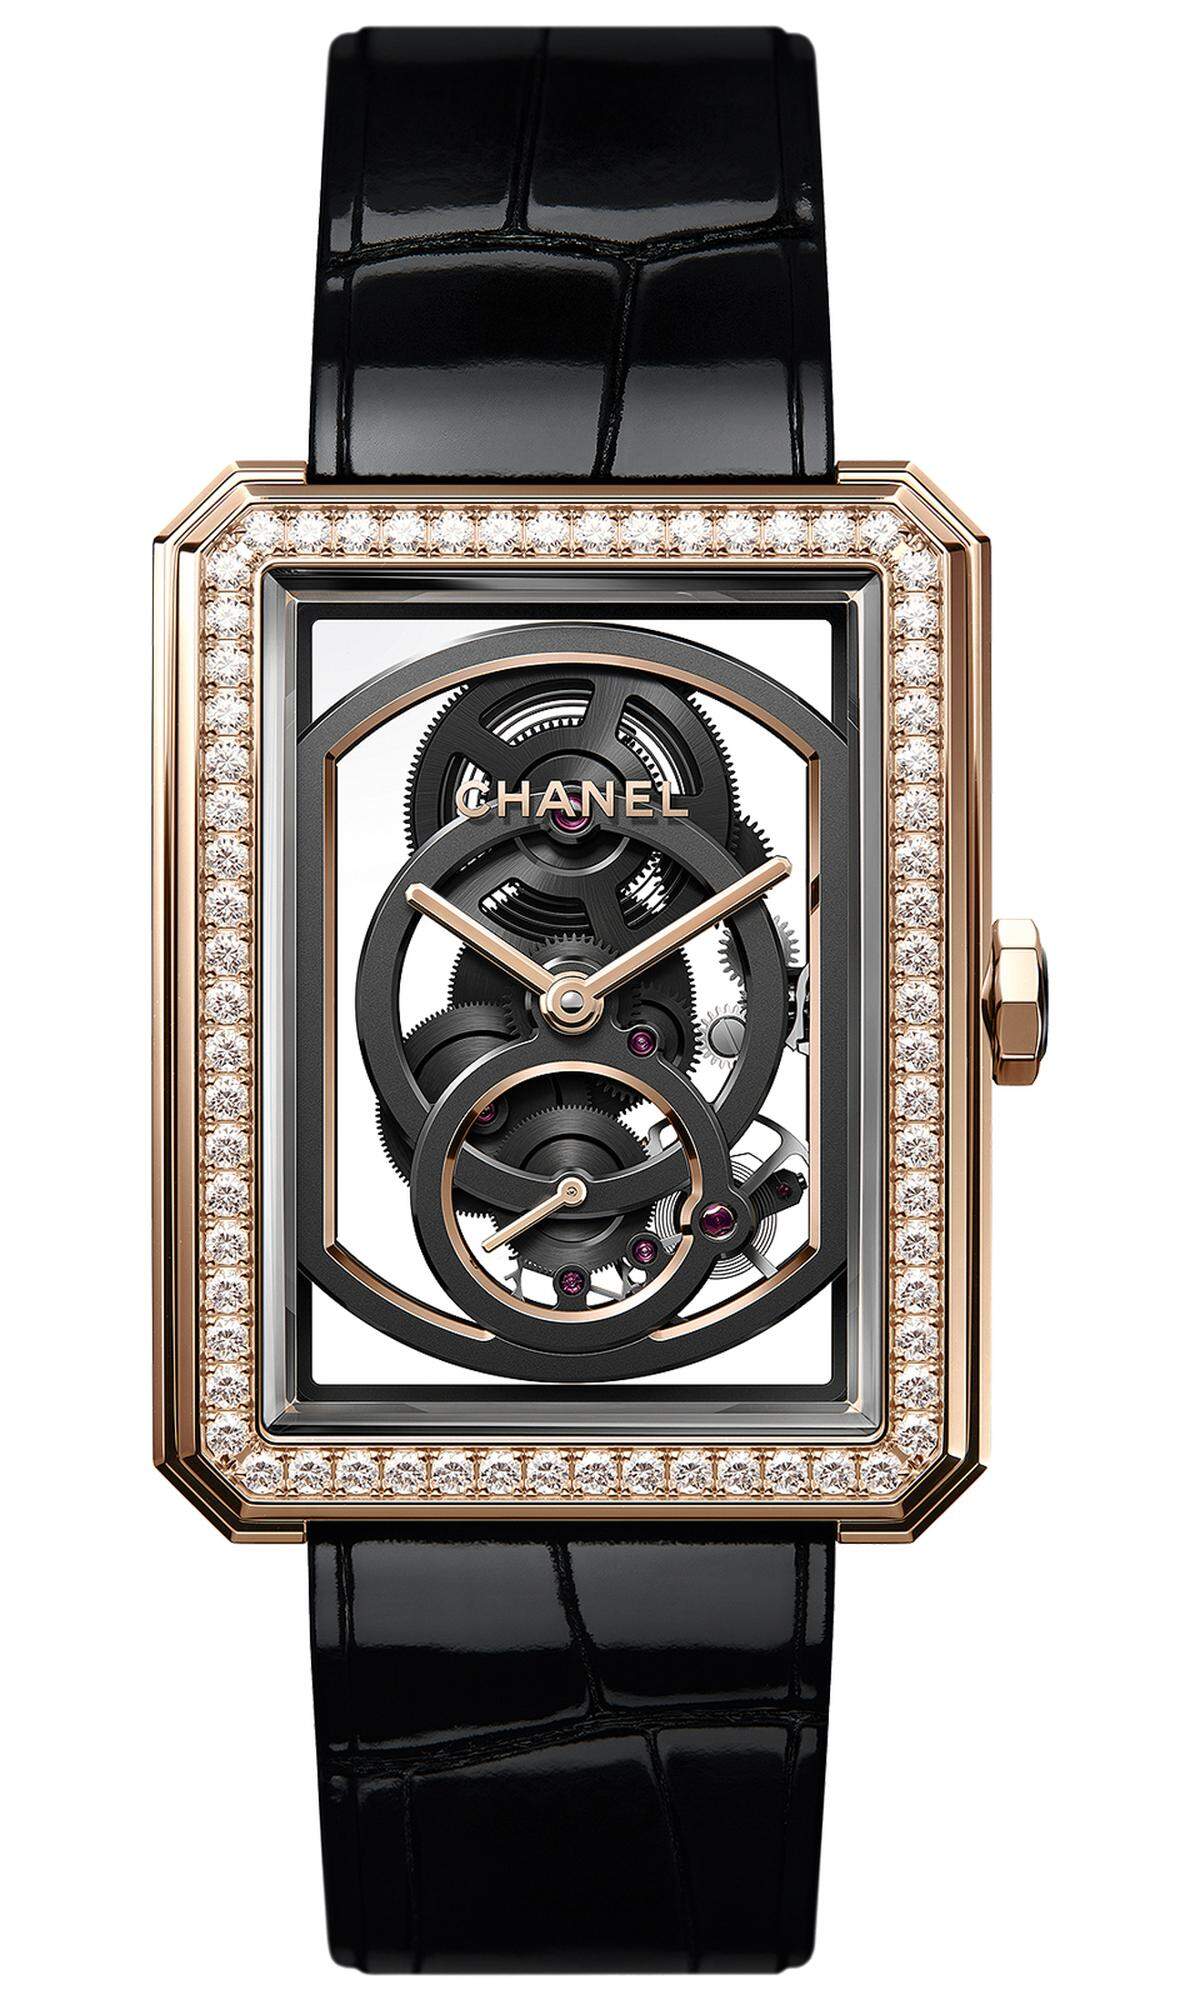 Kategorie Ladies’ Watch: Chanel, „Boy-friend Skeleton".